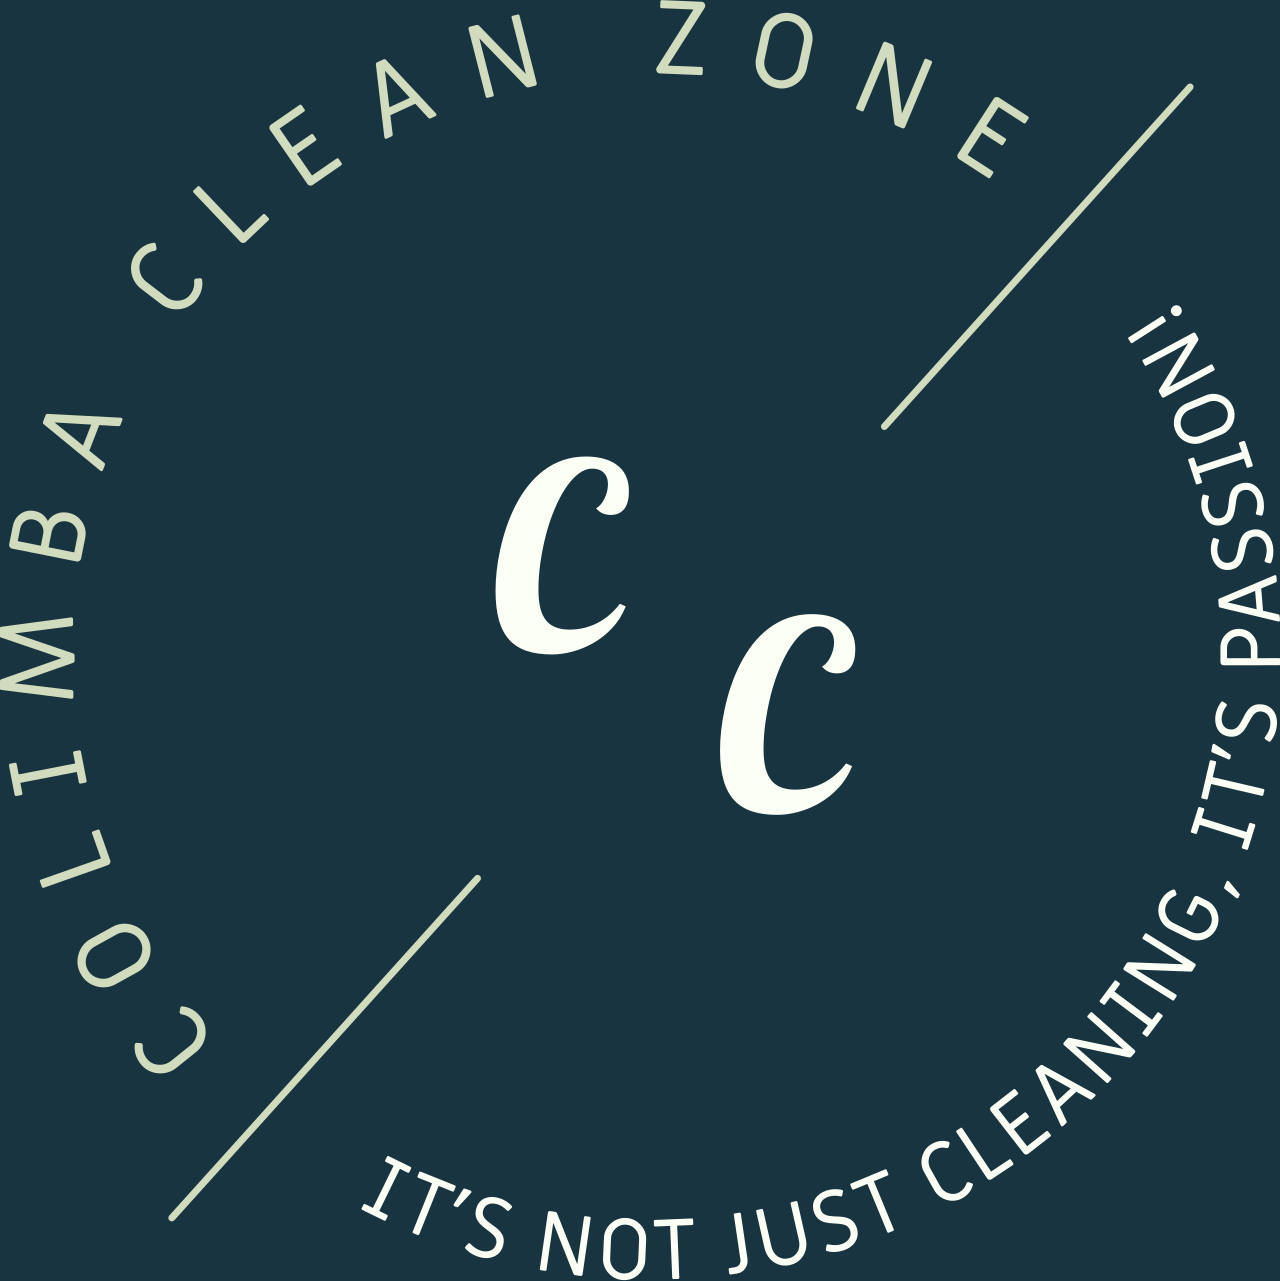 COLIMBA CLEAN ZONE's logo